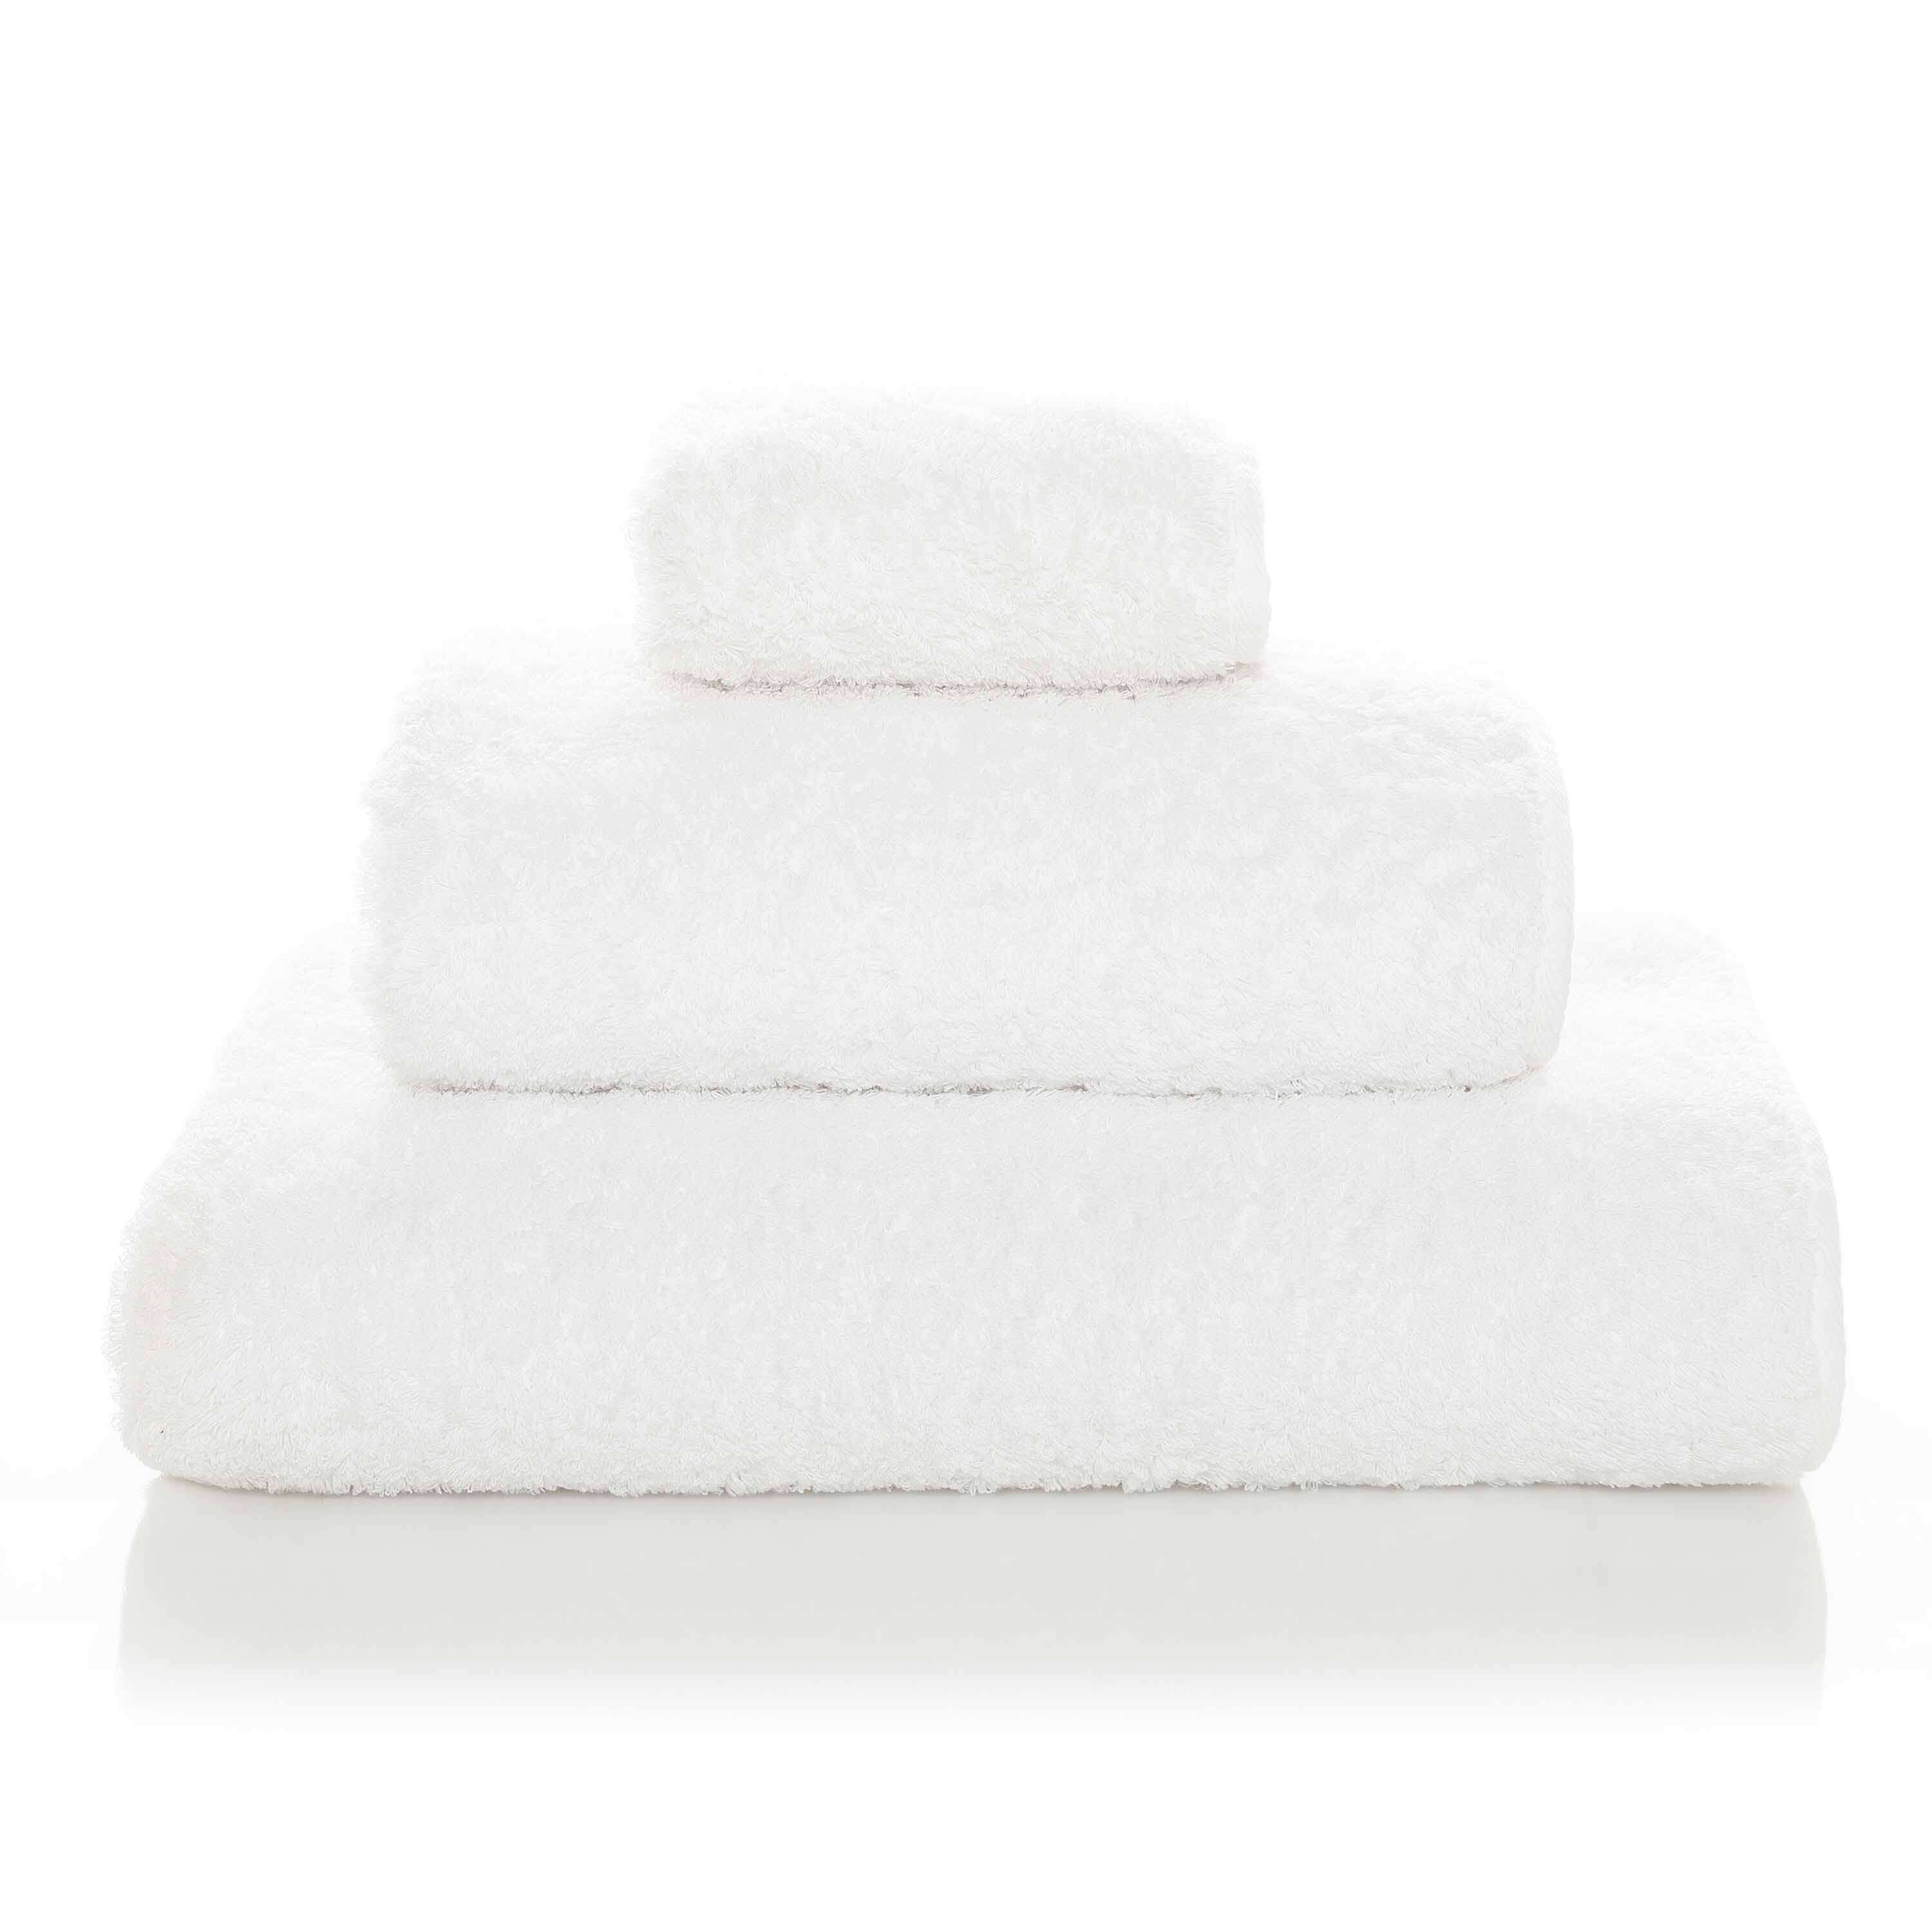 Элитное полотенце Egoist Range White ☞ Размер: 95 x 150 см